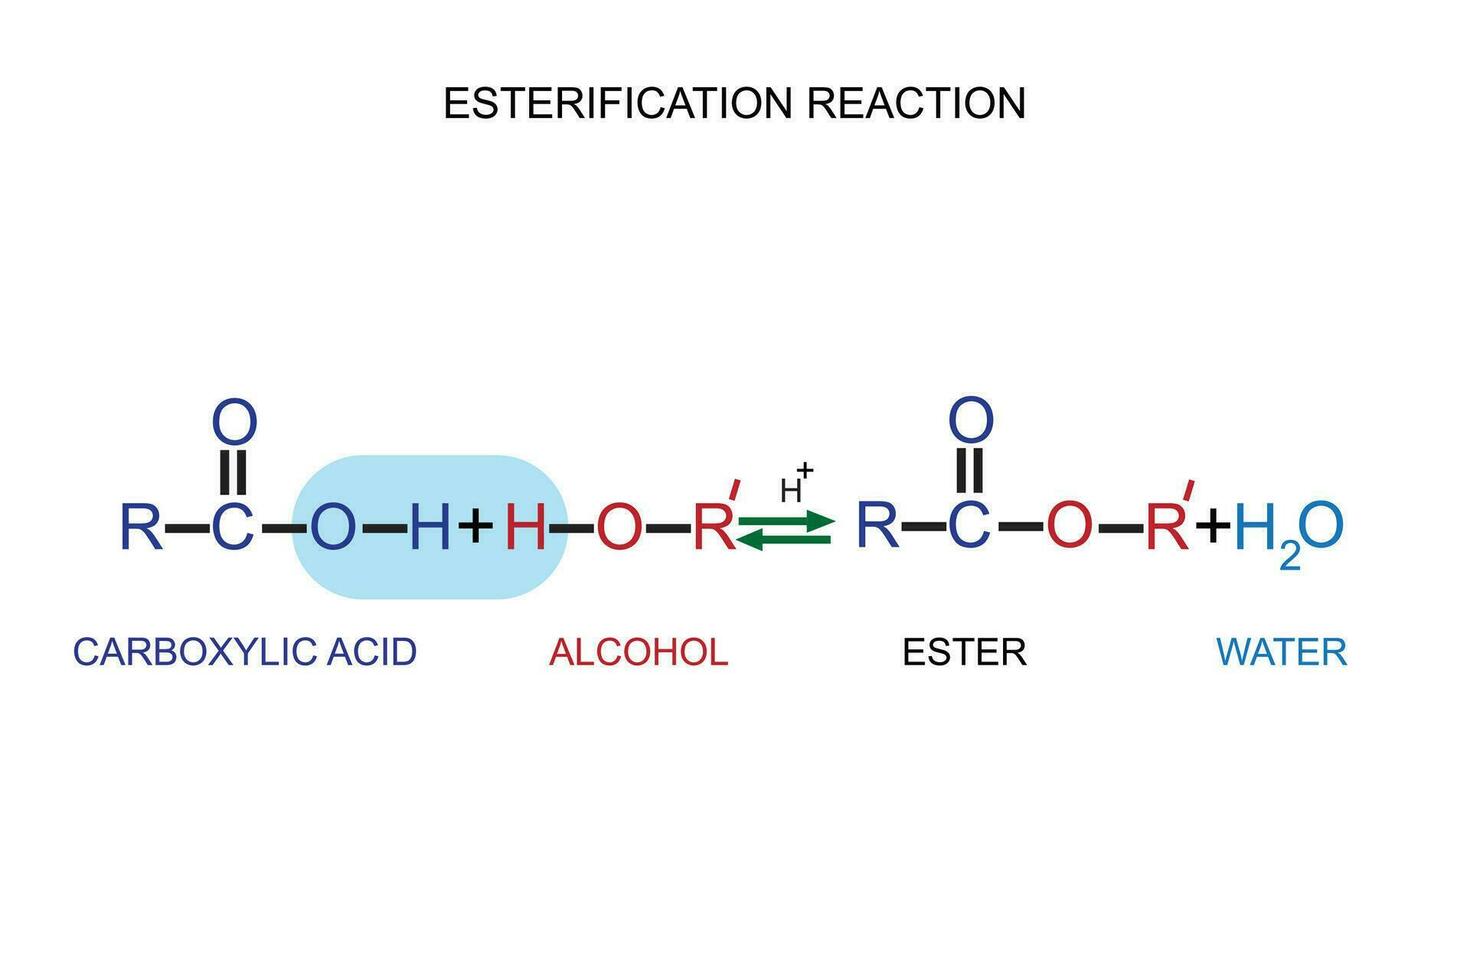 omvandling av karboxylsyra syror till estrar använder sig av syra och alkoholer. förestring reaktion. kemi begrepp. organisk kemi. vektor